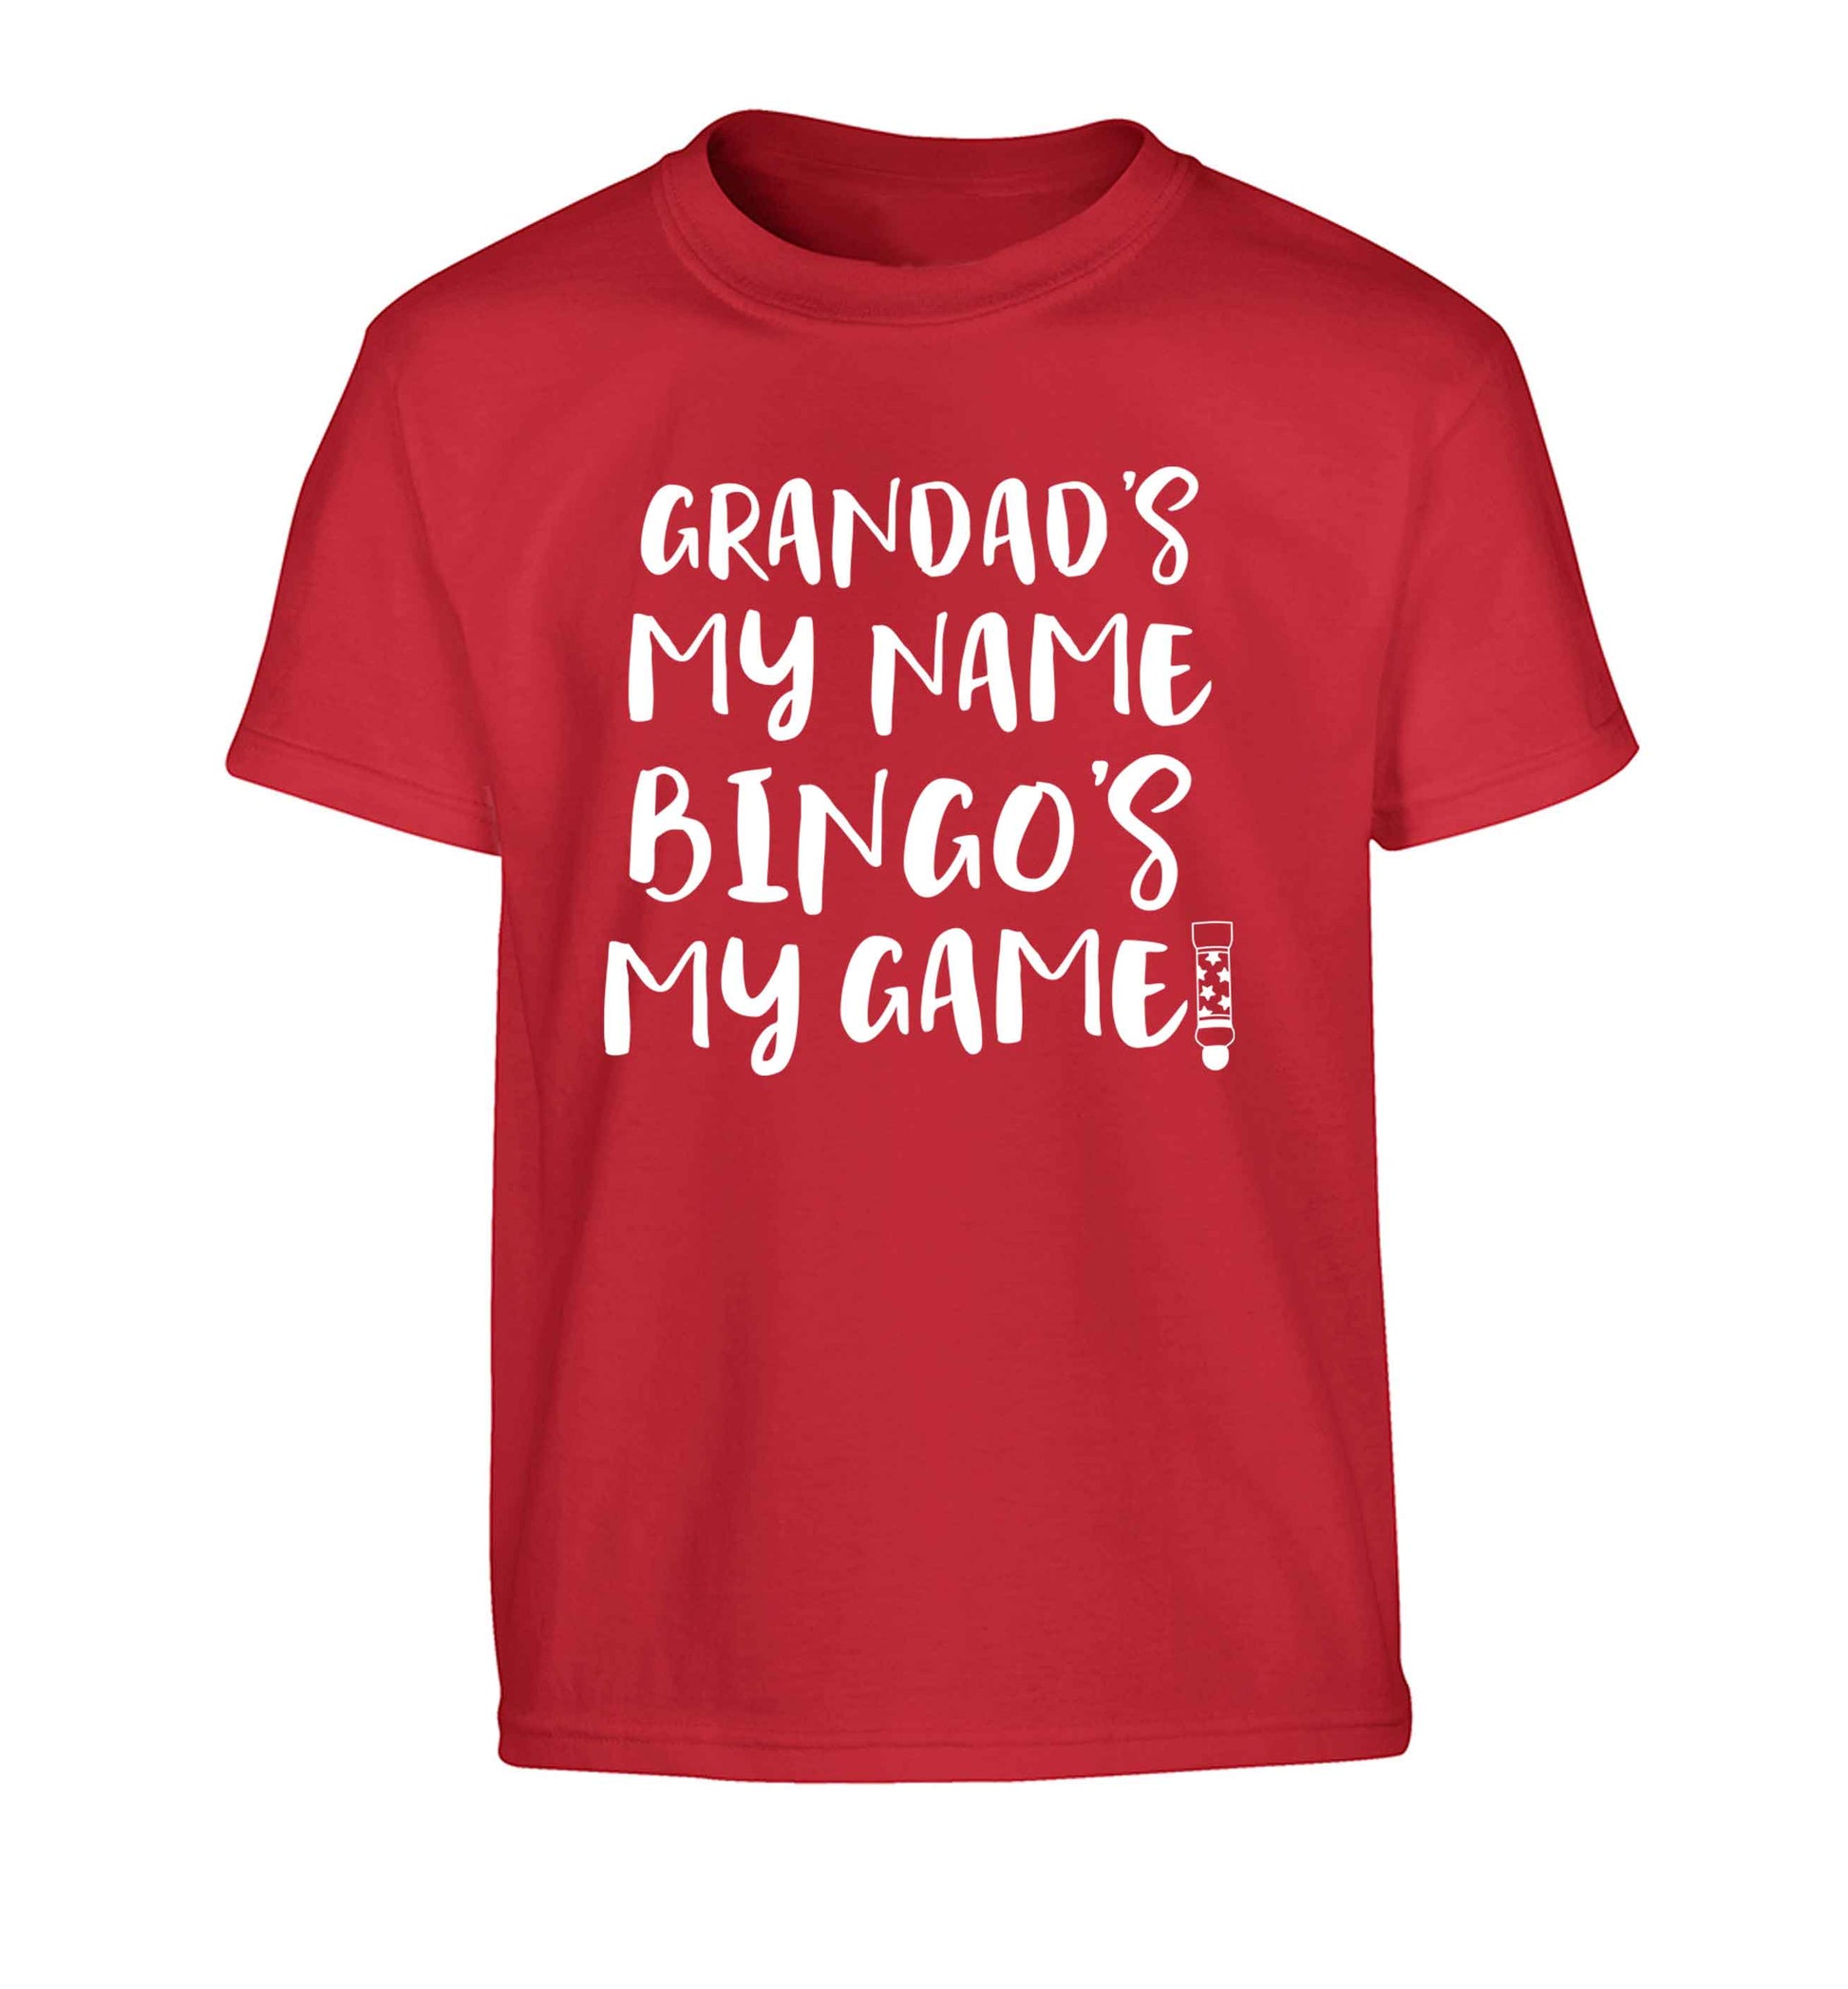 Grandad's my name bingo's my game! Children's red Tshirt 12-13 Years